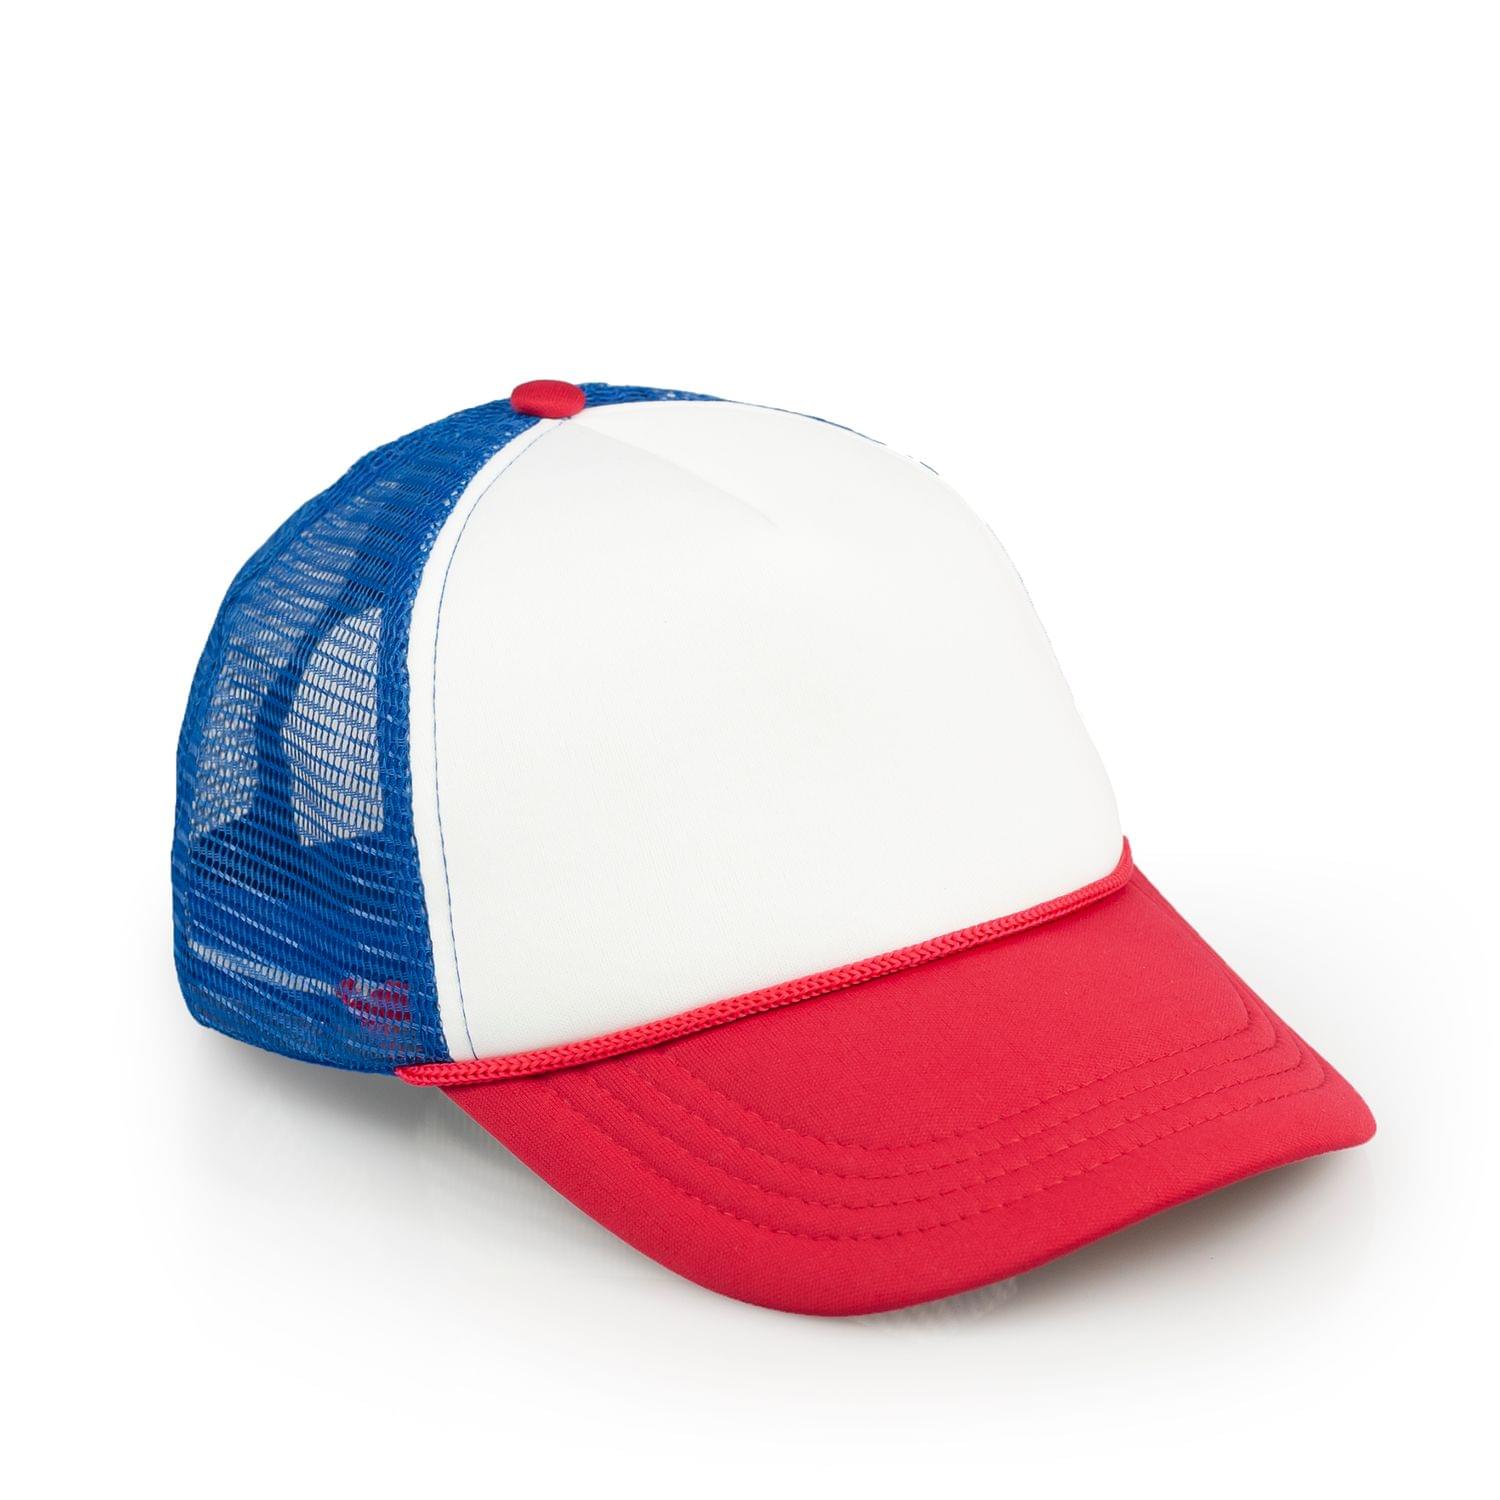 Red & White Baseball Cap